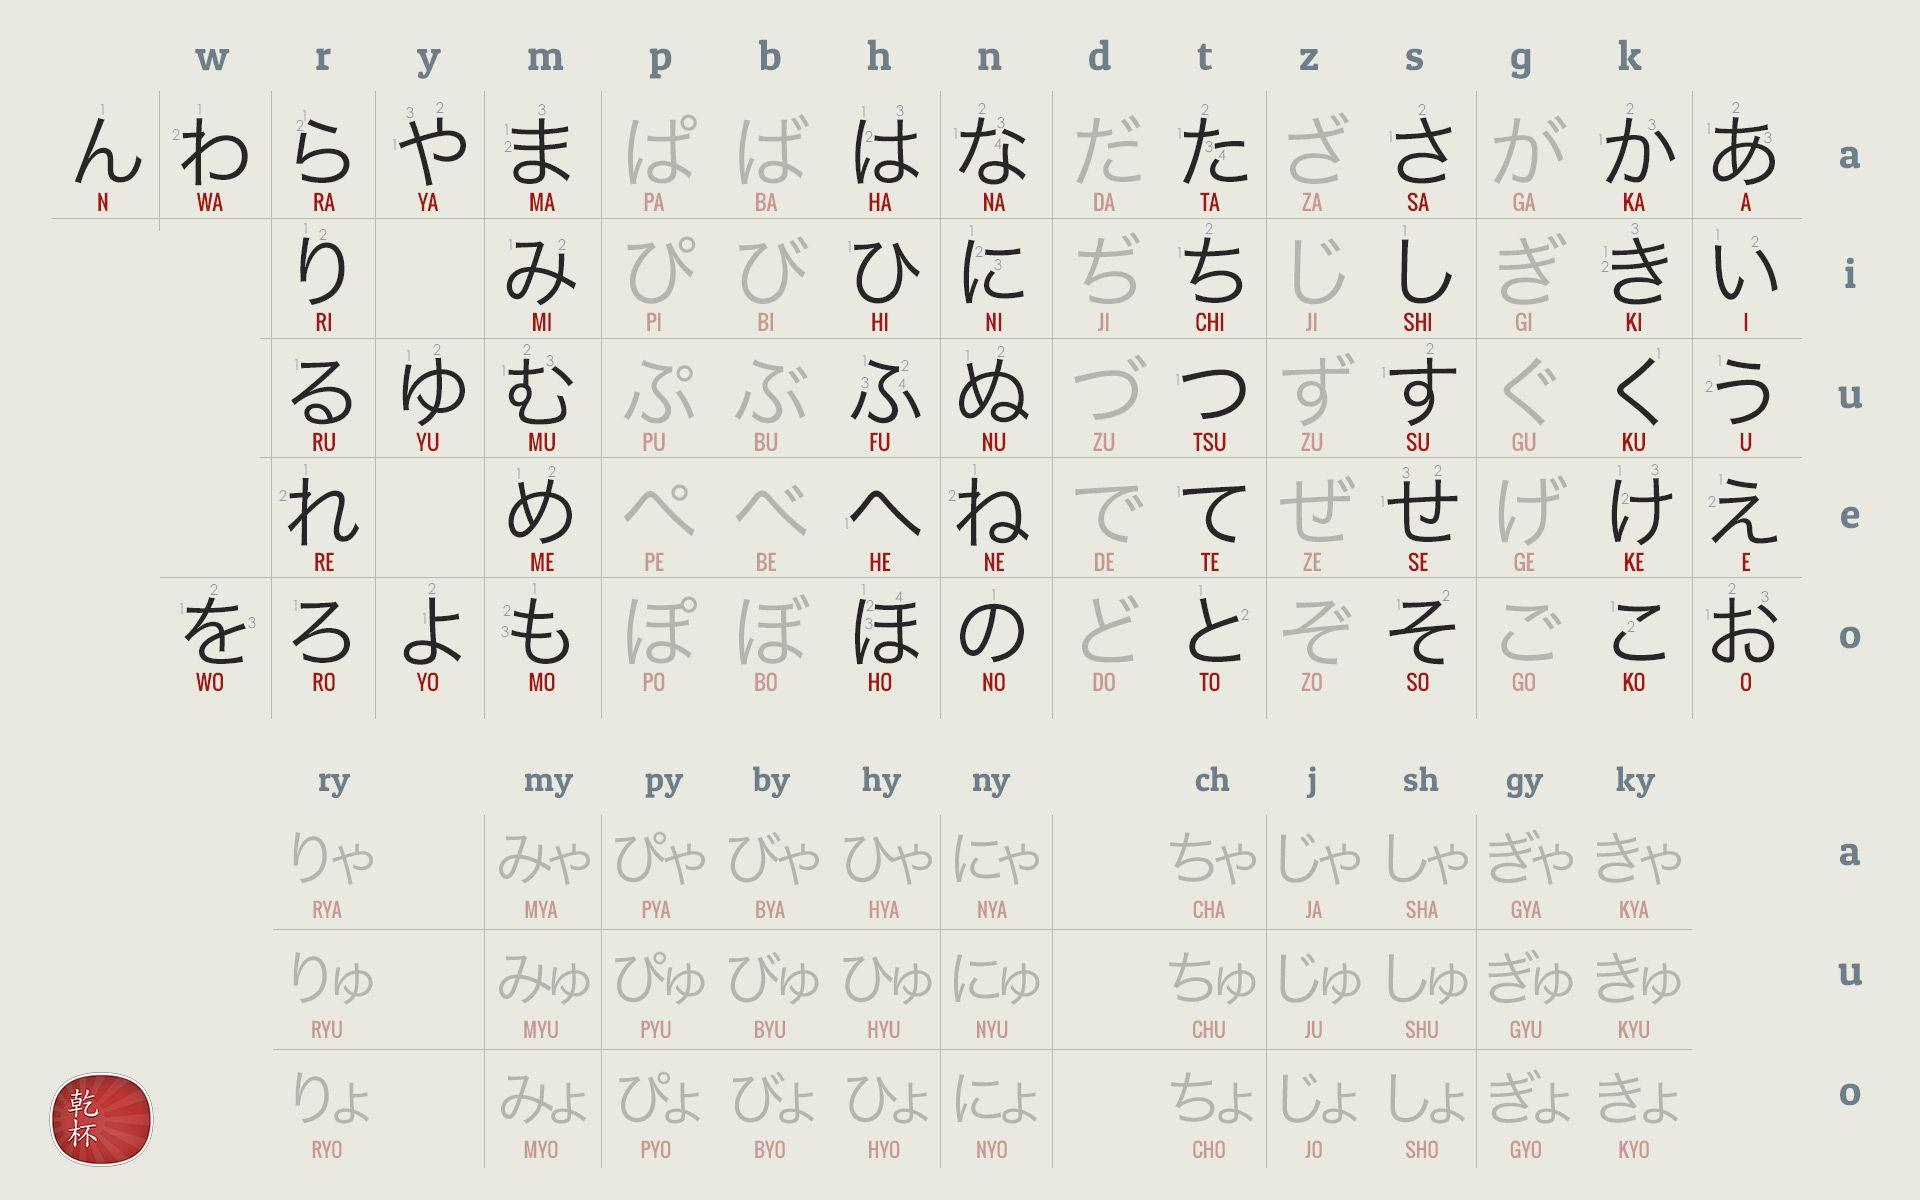 Japanese Hiragana Chart Wallpapers - Top Free Japanese Hiragana Chart ...